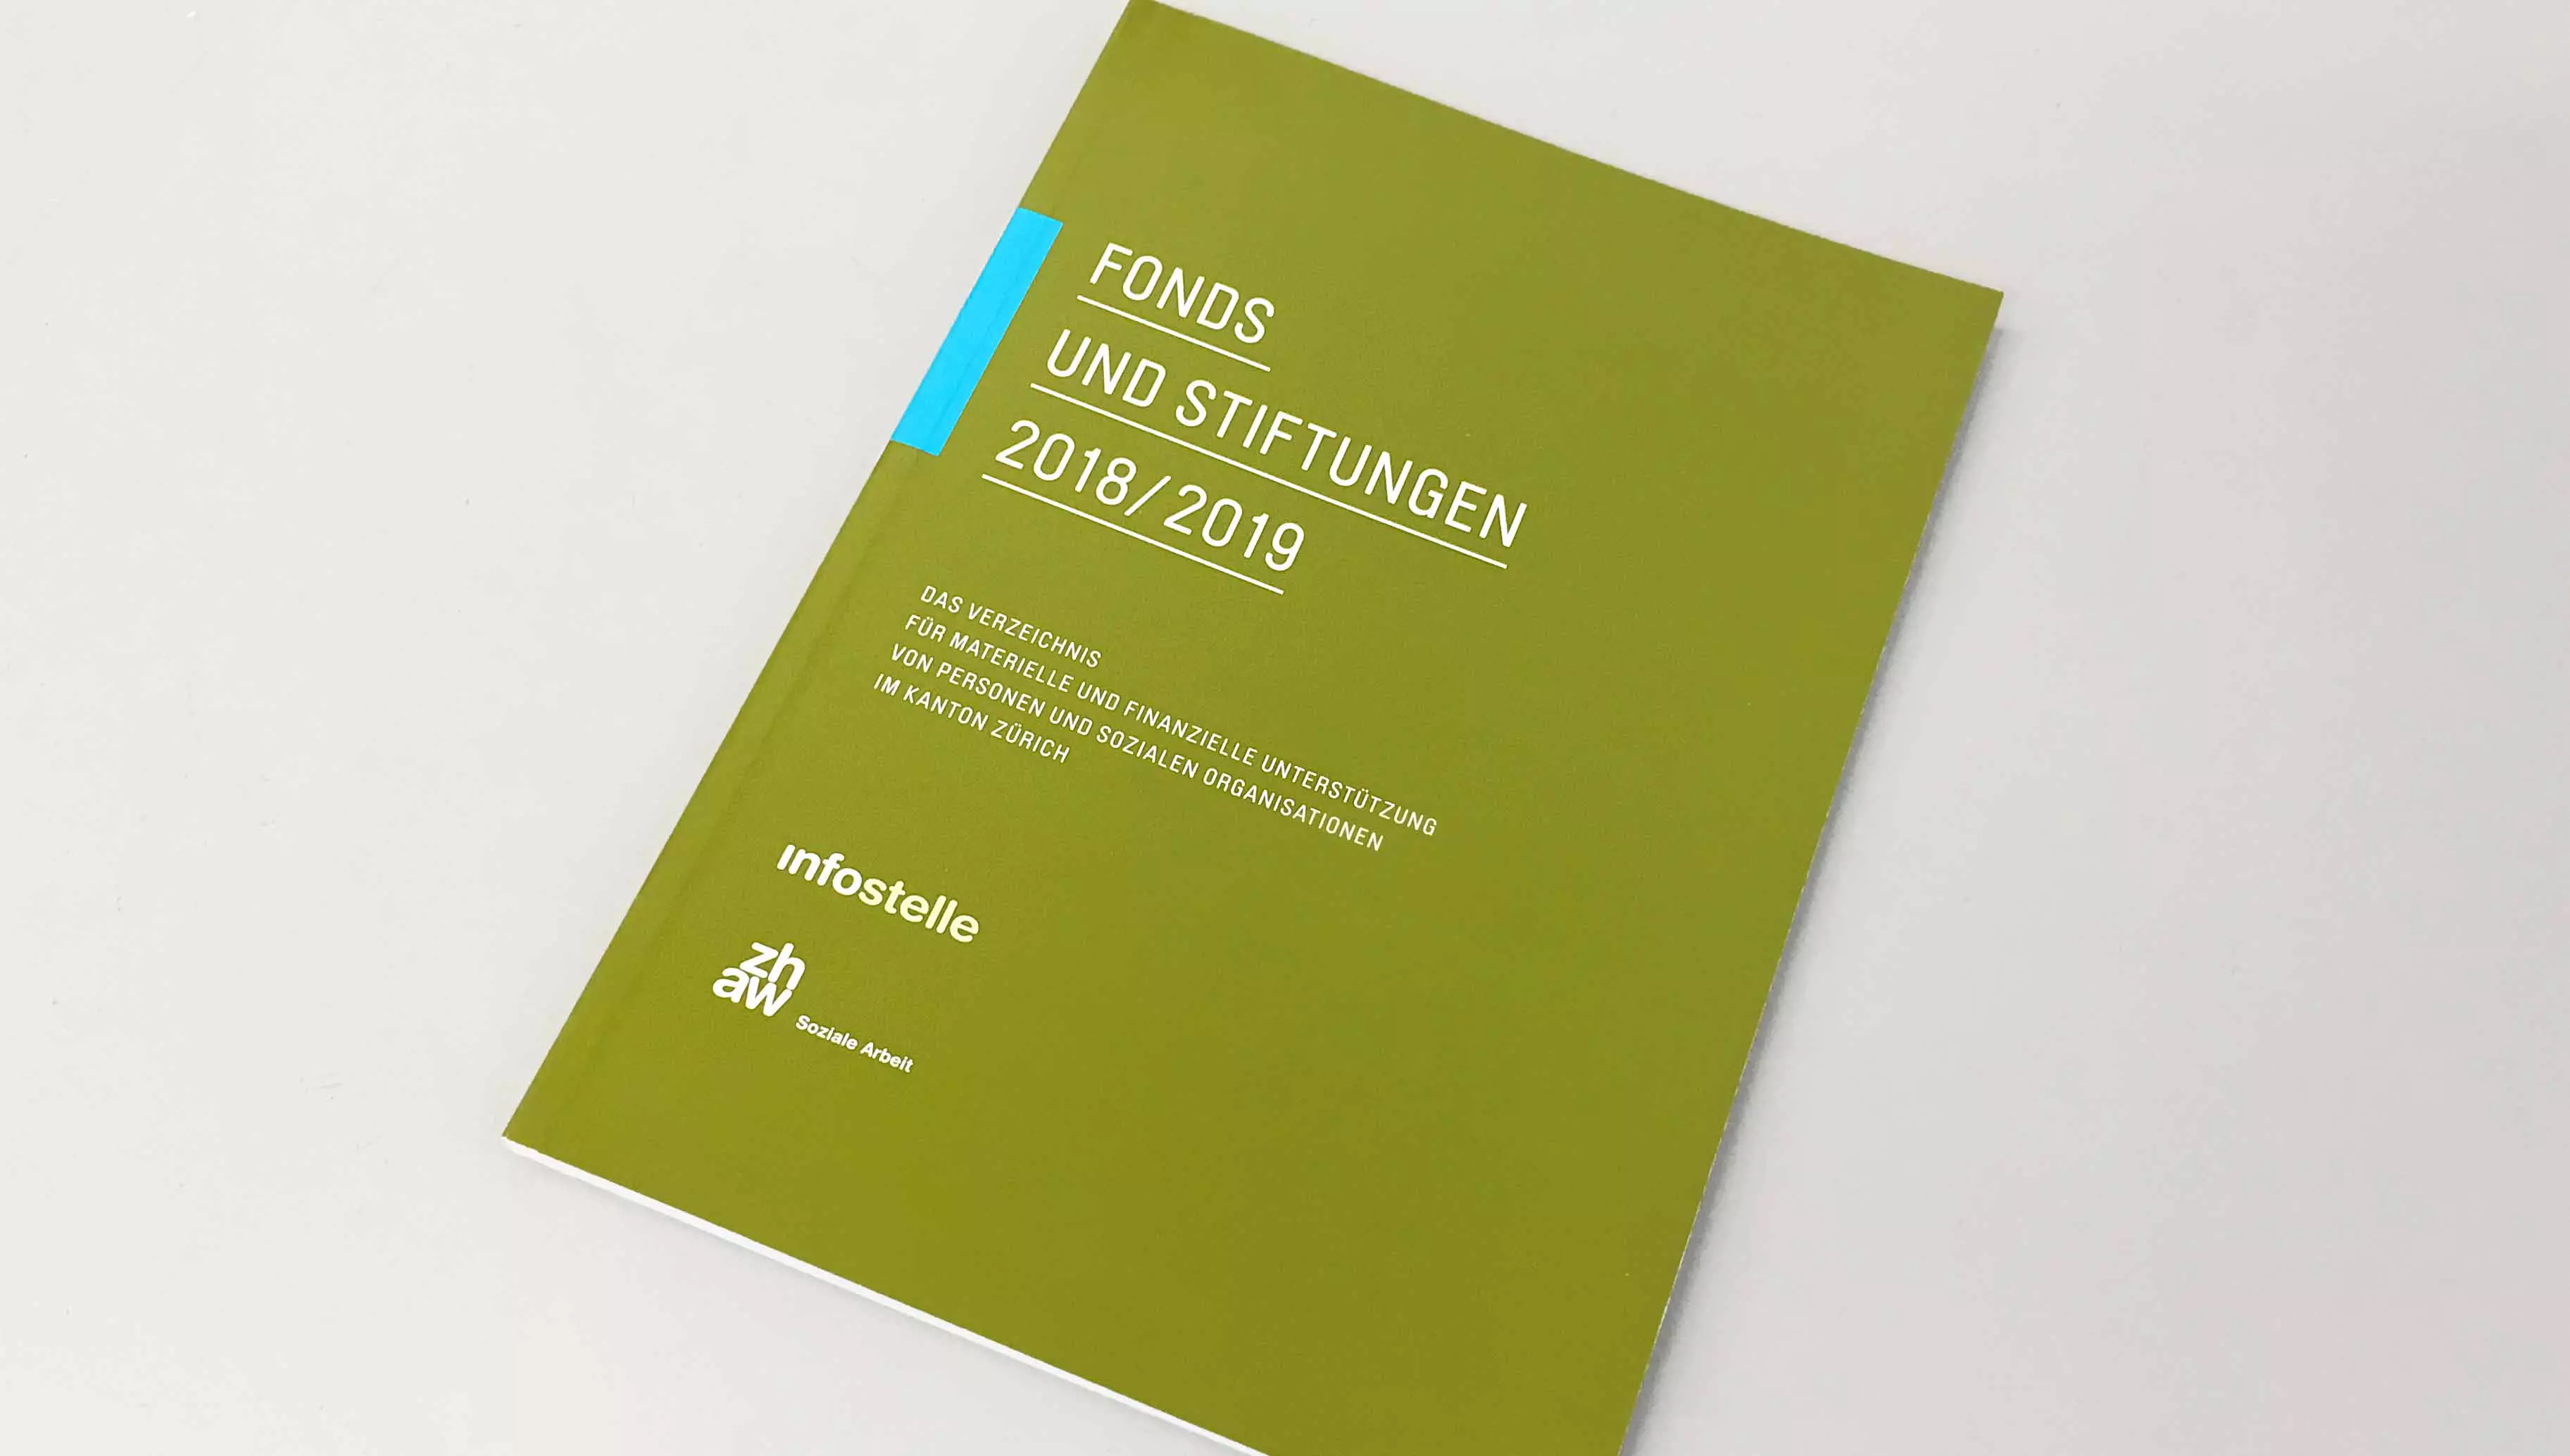 Bild des Buches "Fonds und Stiftungen 2018/19"